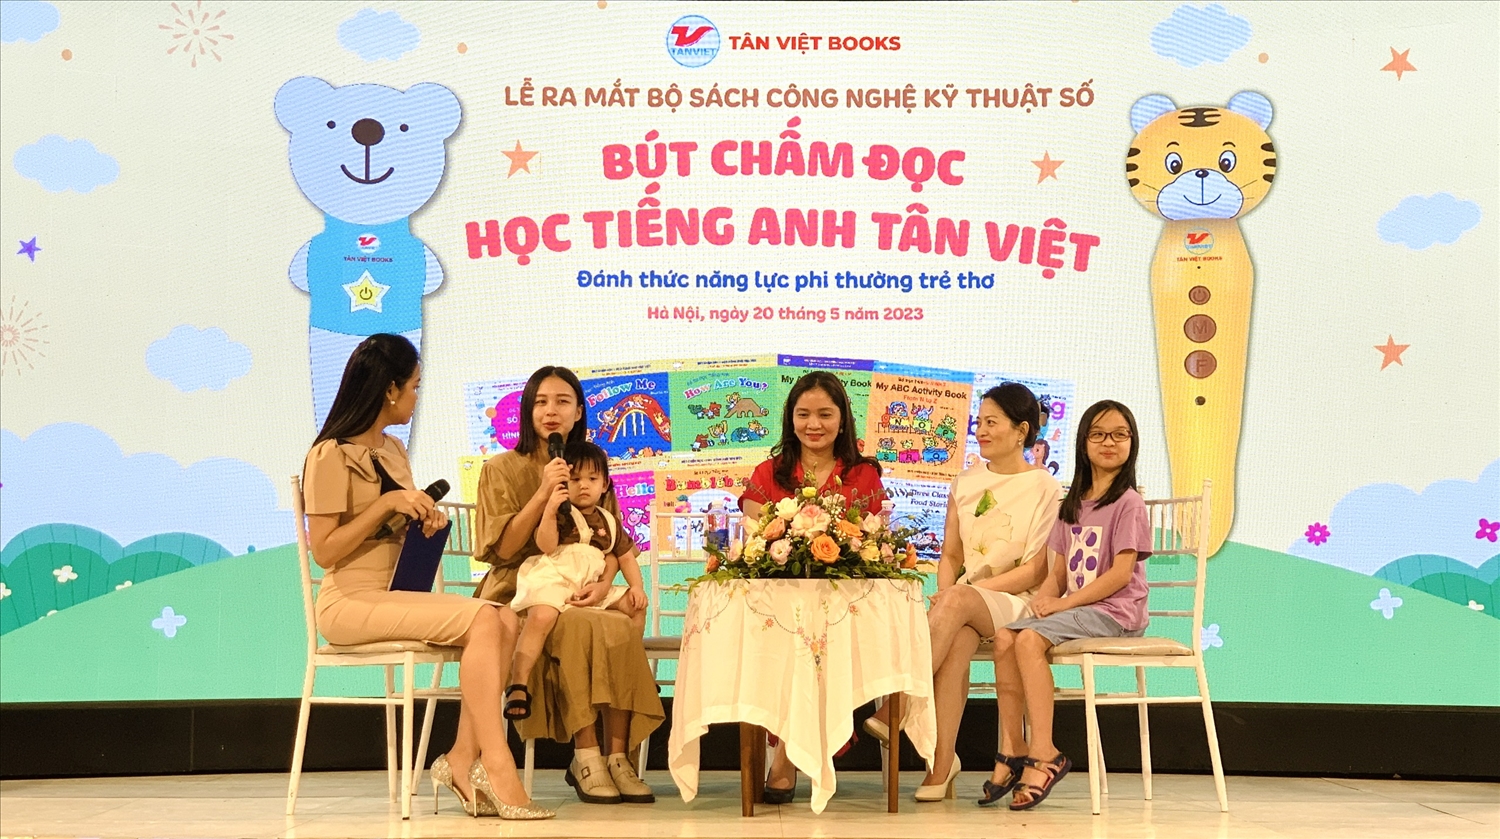 Chị Quỳnh Anh, người đồng hành cùng em bé MinHee trong hành trình học Tiếng Anh với những video tương tác cùng con thu hút sự chú ý trên mạng xã hội chia sẻ về những kinh nghiệm trong quá trình dạy ngoại ngữ cho con